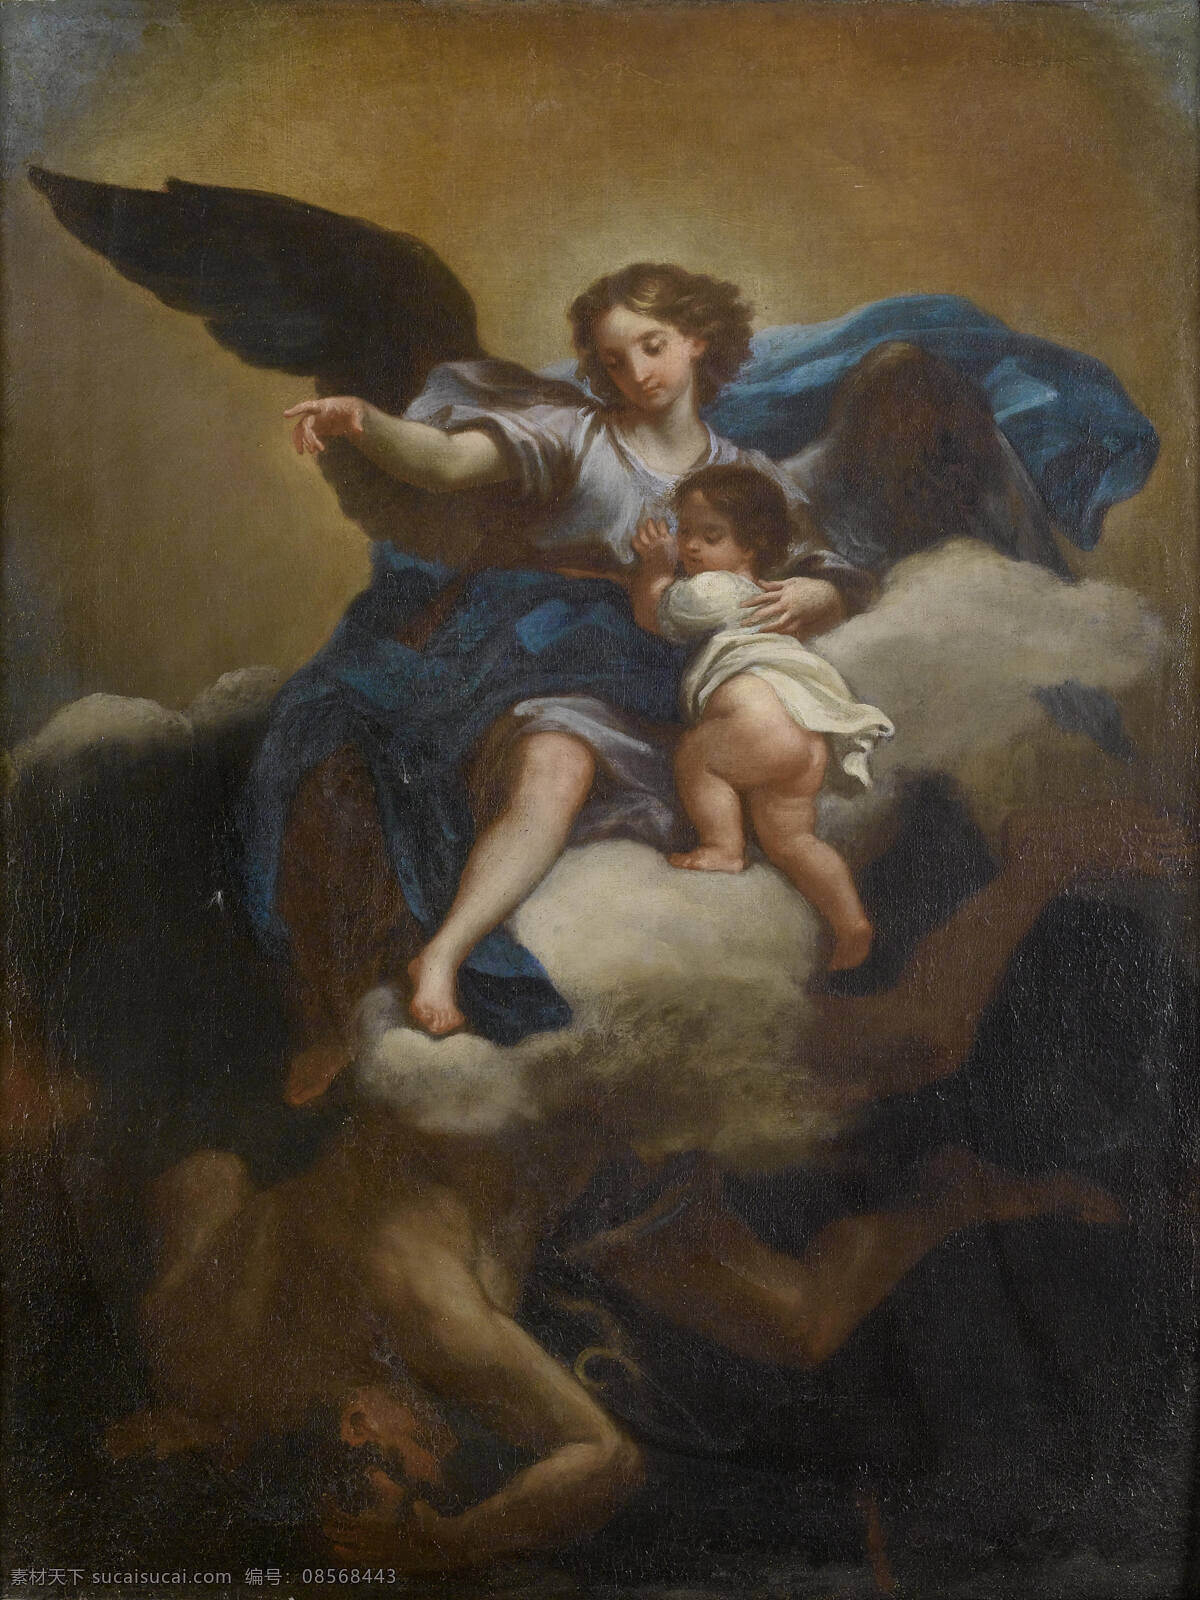 驱赶魔鬼 圣经故事 天使 搭救孩子 消除邪恶 古典油画 油画 绘画书法 文化艺术